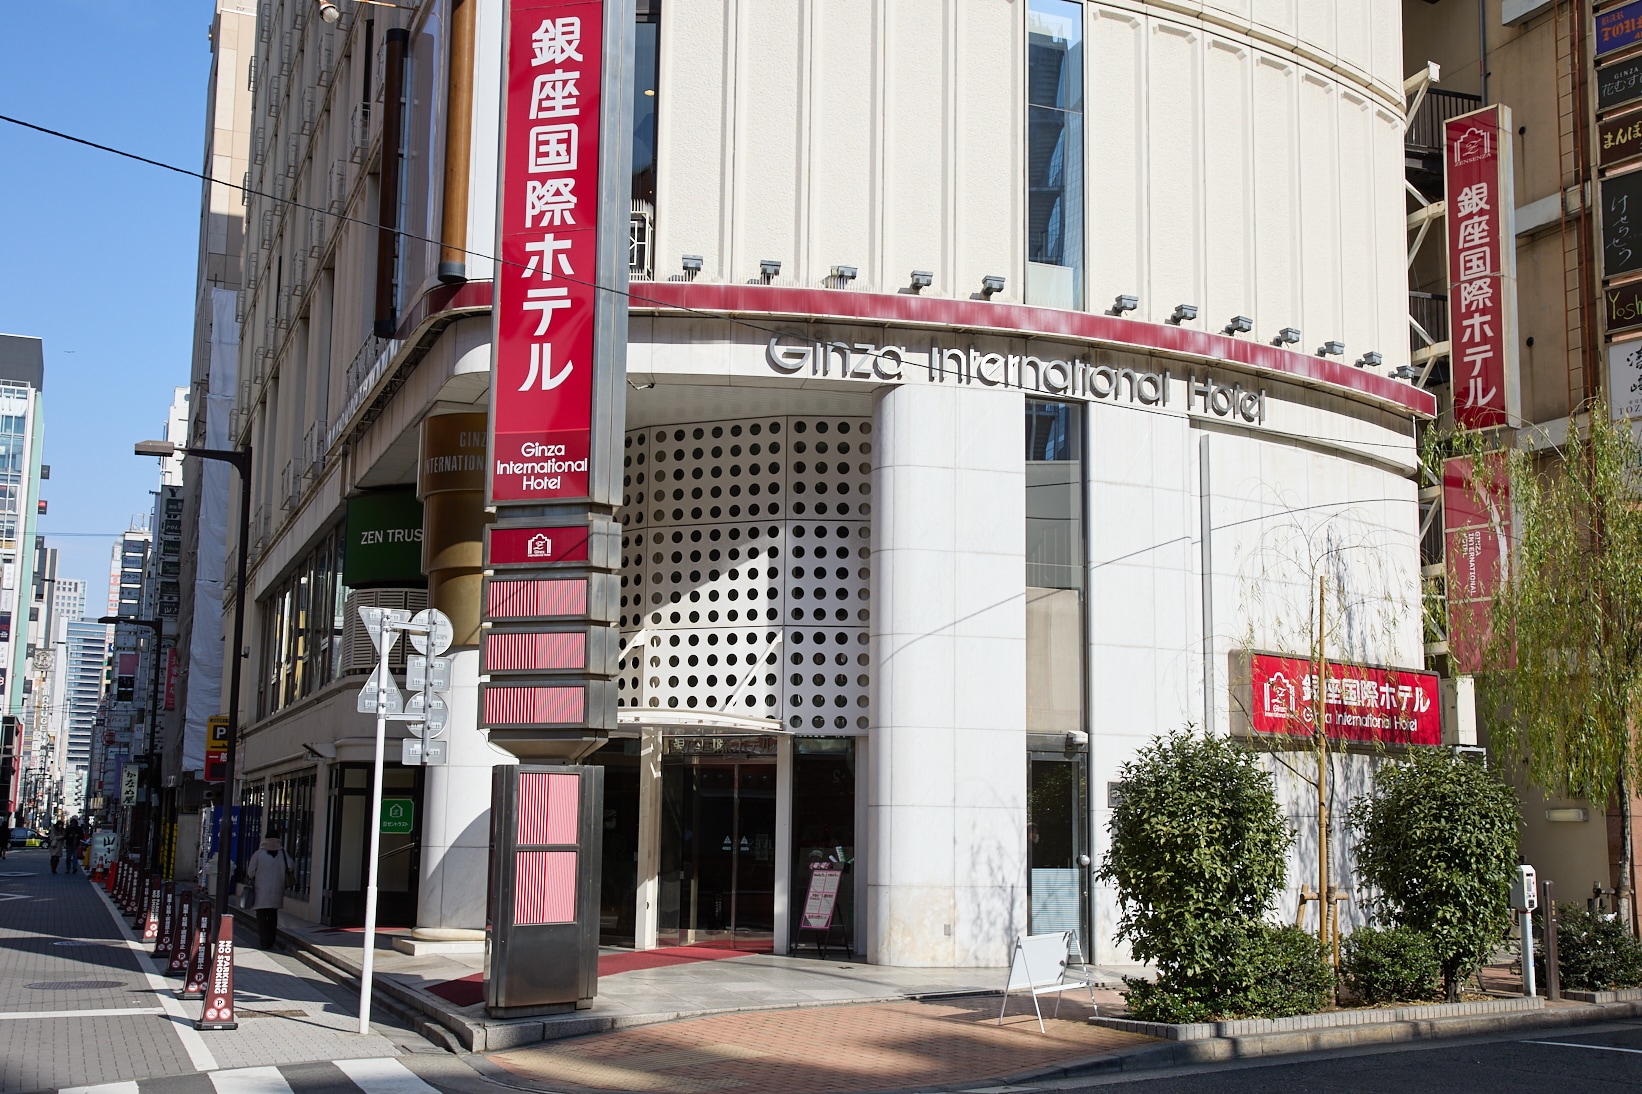 [Penampilan hotel] 3 menit berjalan kaki dari stasiun JR Shimbashi